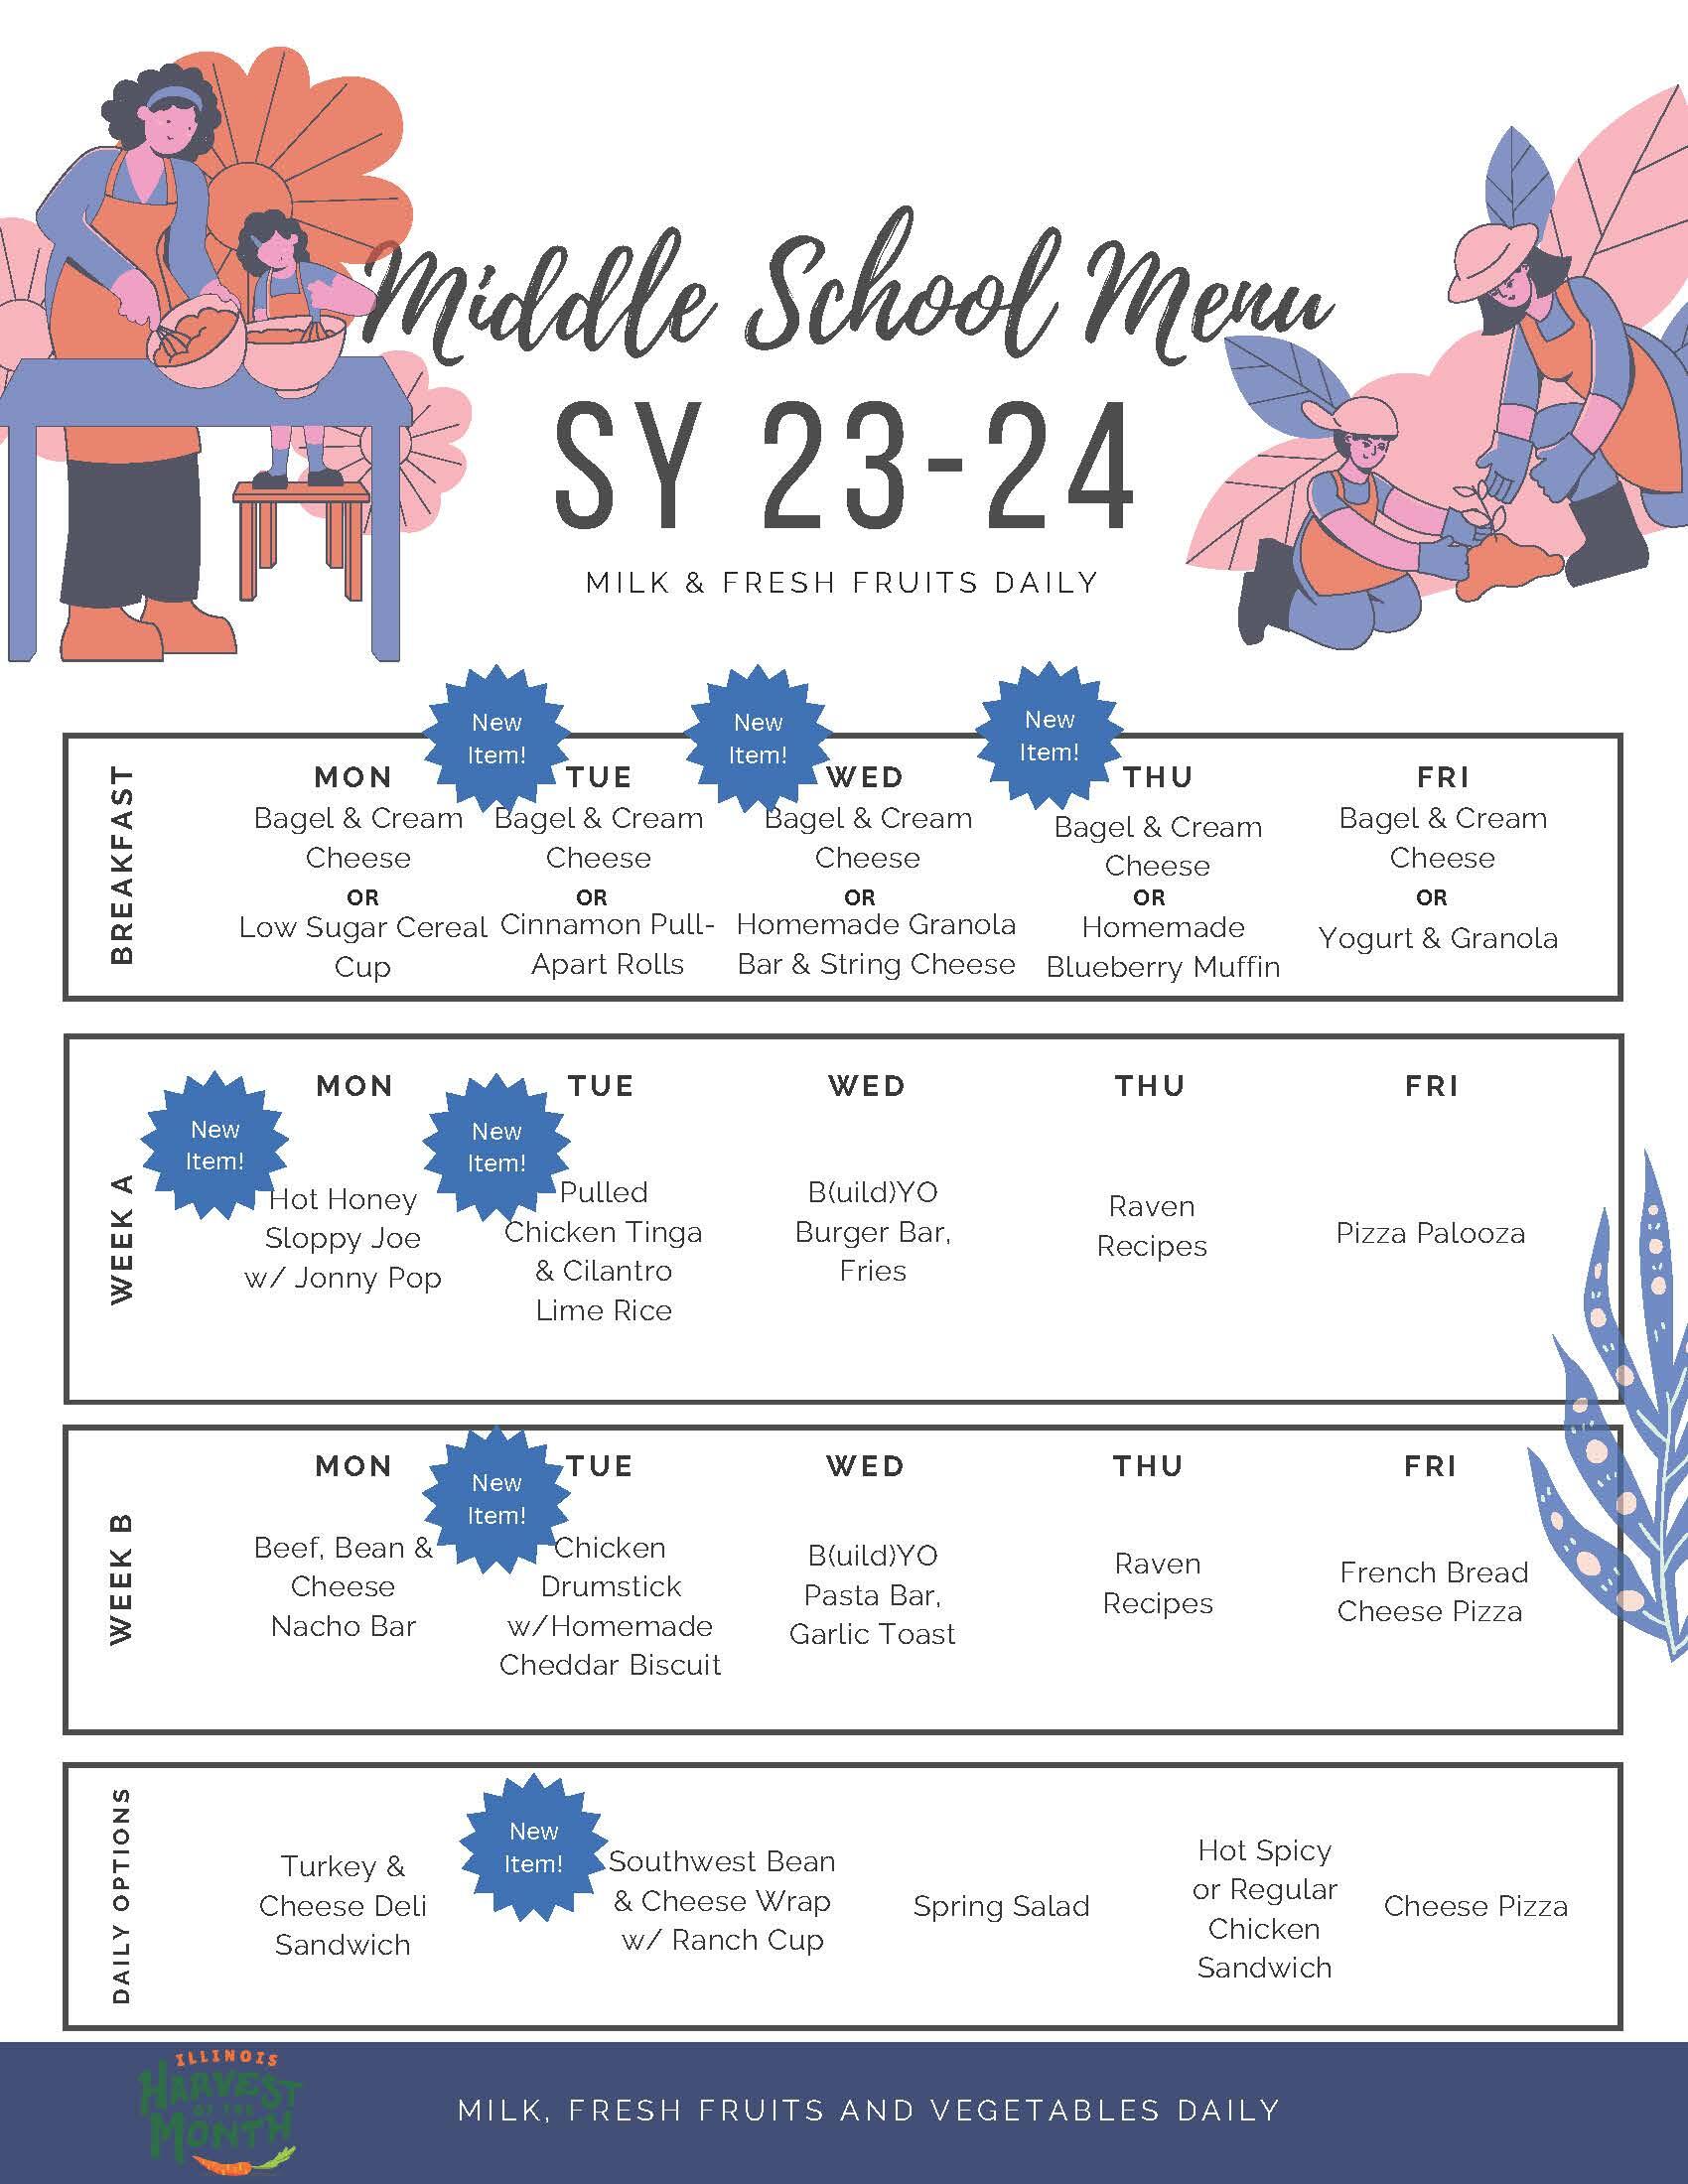 Lunch menu for 2022-2023 school year